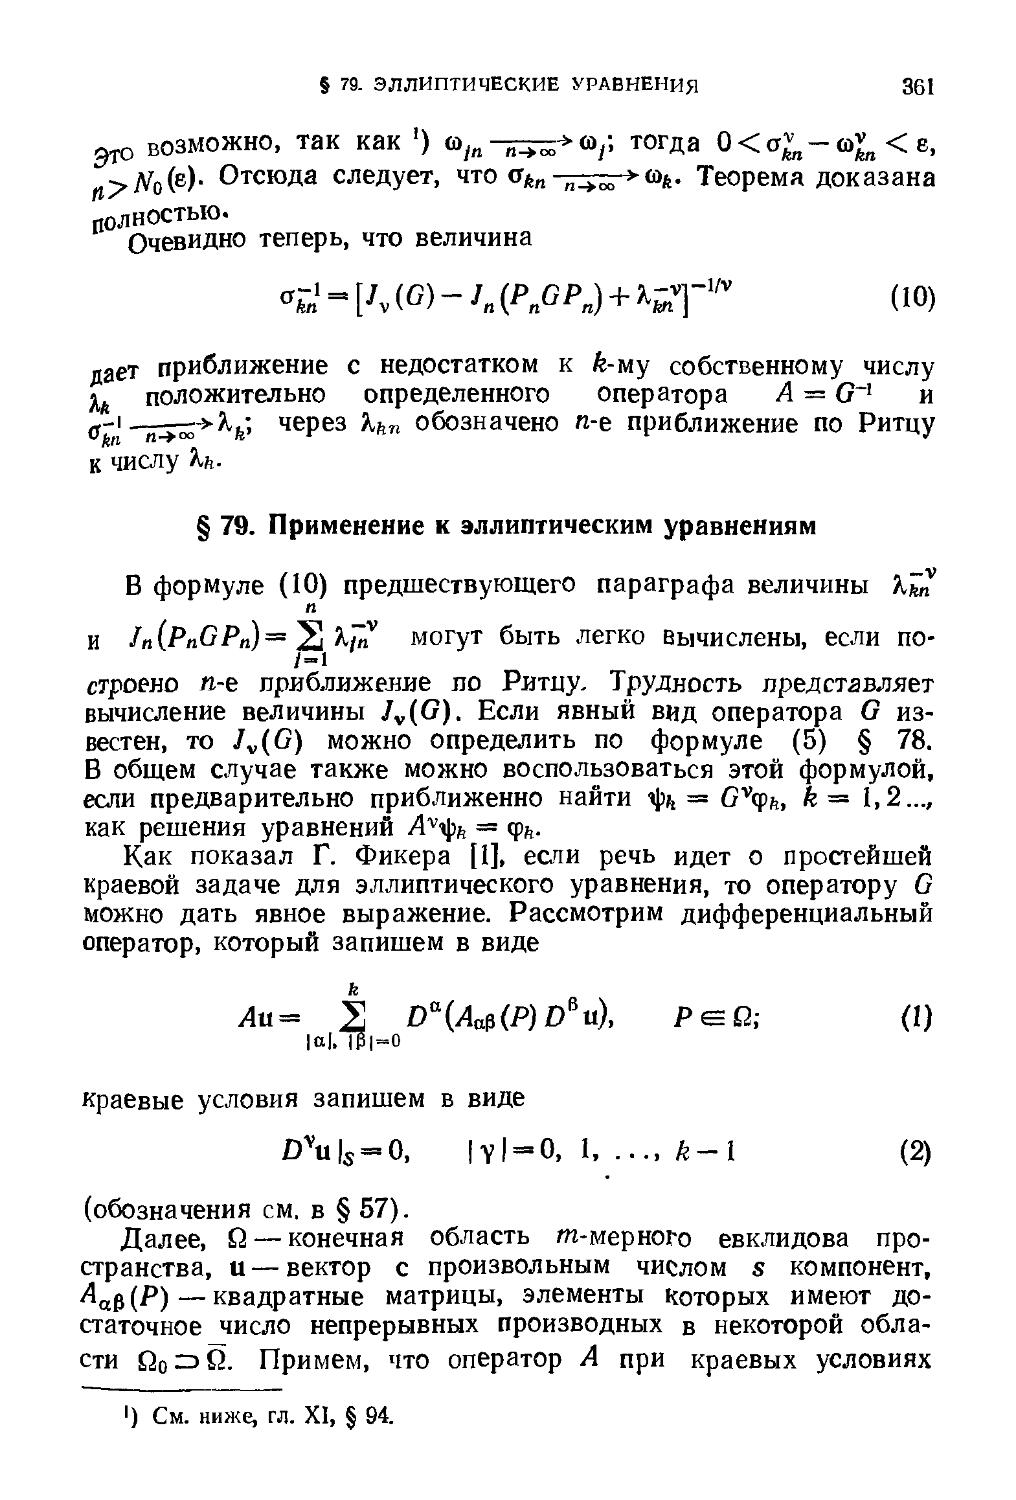 § 79. Применение к эллиптическим уравнениям